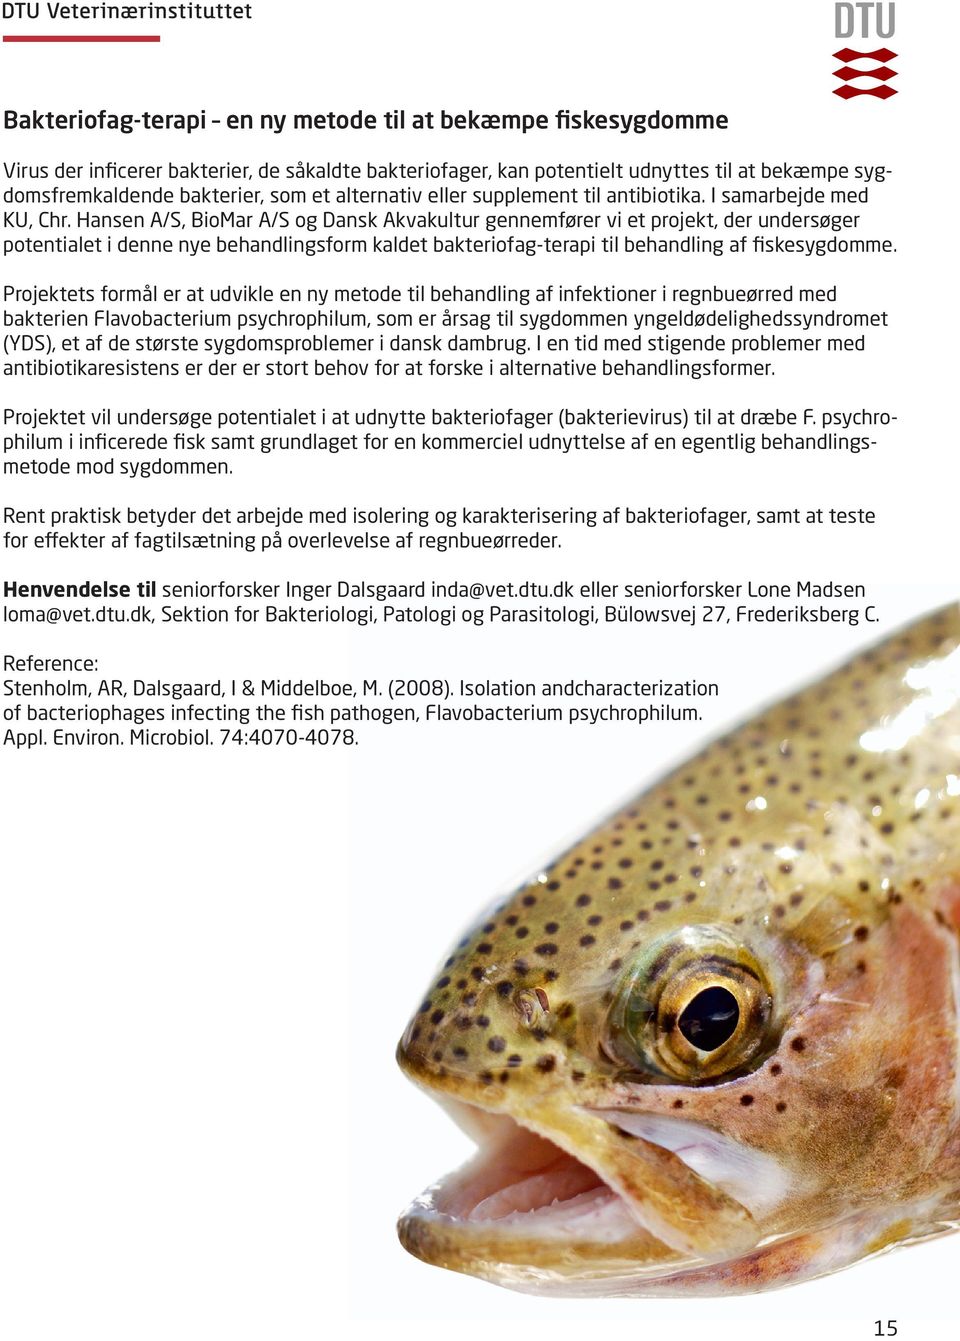 Hansen A/S, BioMar A/S og Dansk Akvakultur gennemfører vi et projekt, der undersøger potentialet i denne nye behandlingsform kaldet bakteriofag-terapi til behandling af fiskesygdomme.